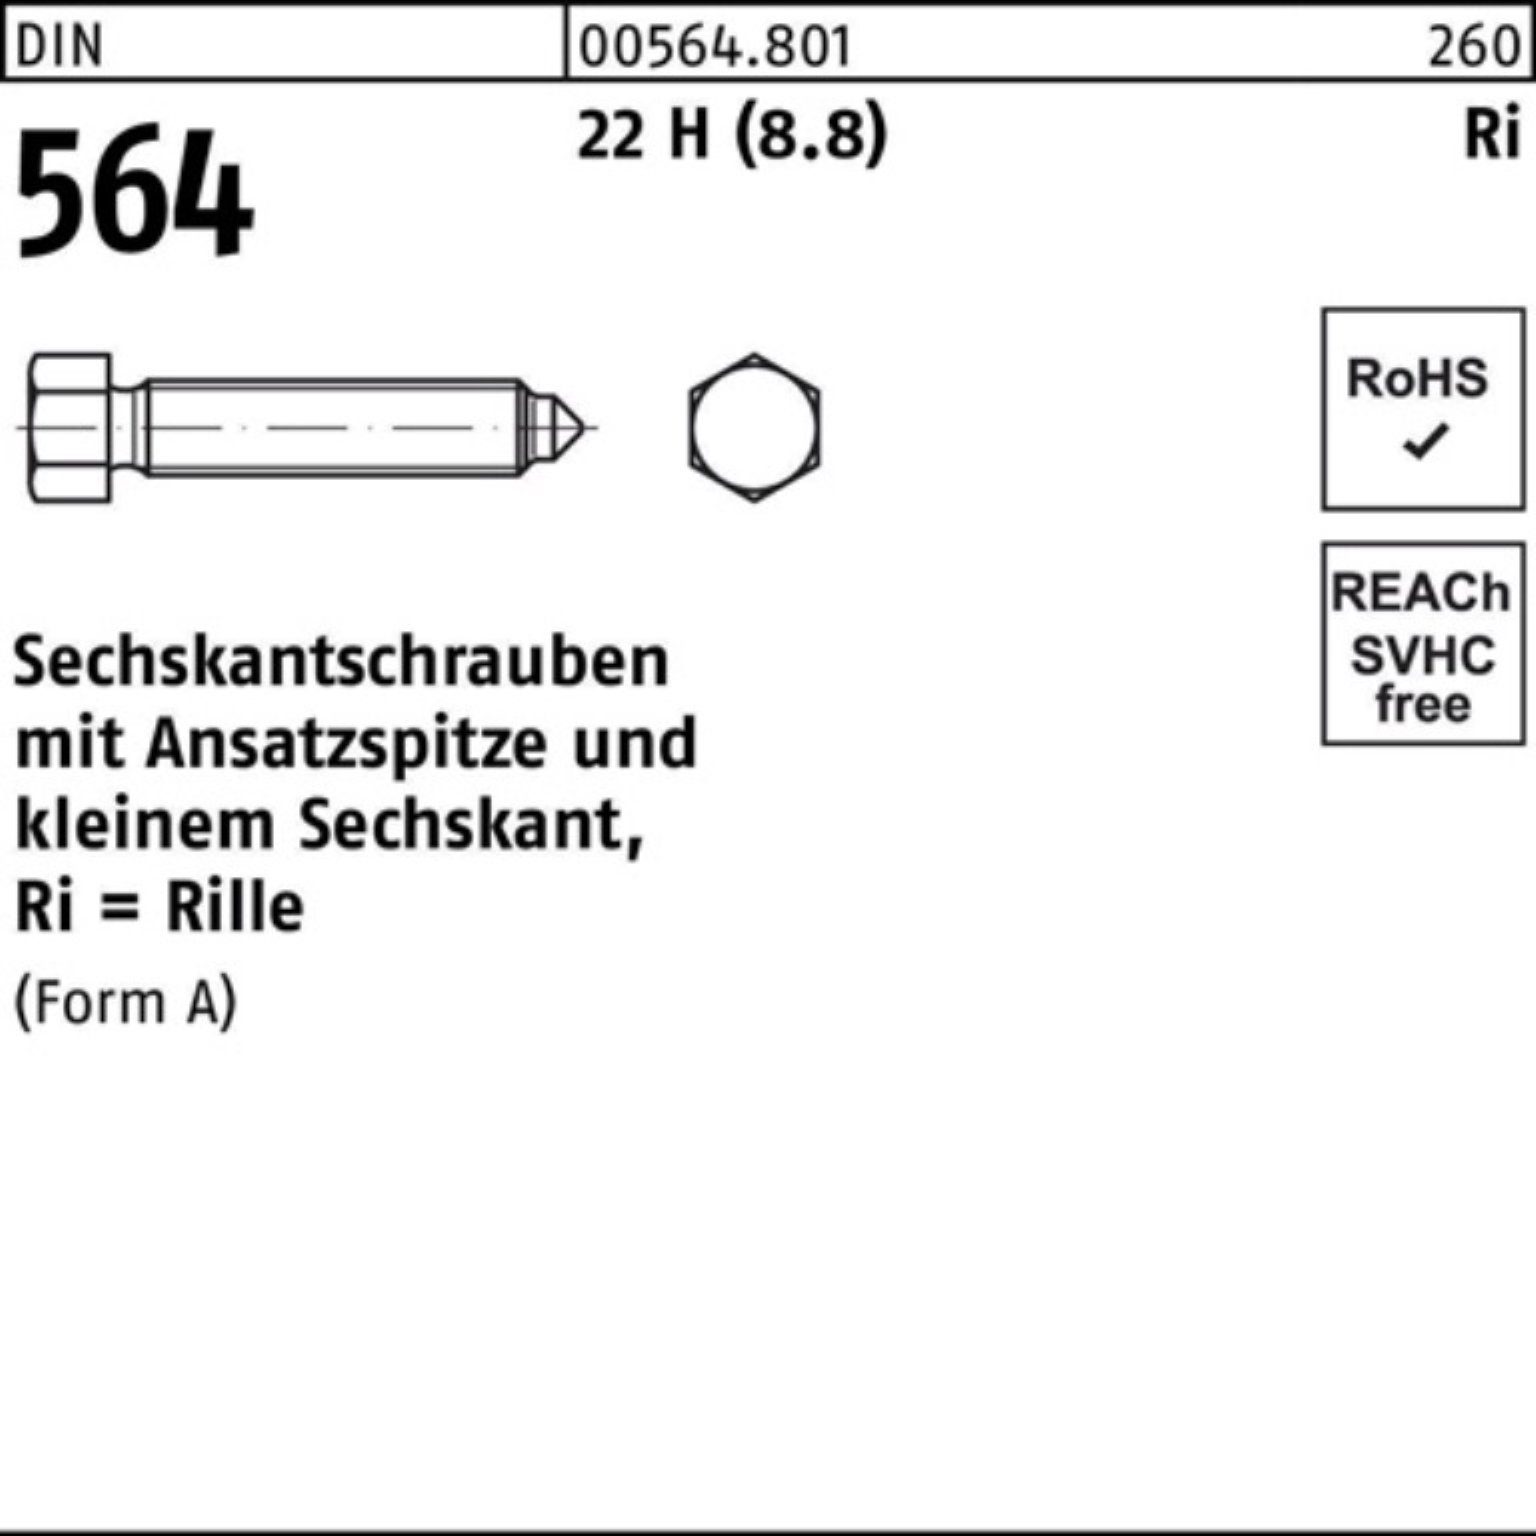 Reyher Sechskantschraube 100er Pack Sechskantschraube DIN 564 Ansatzspitze AM 12x 25 22 H (8.8)